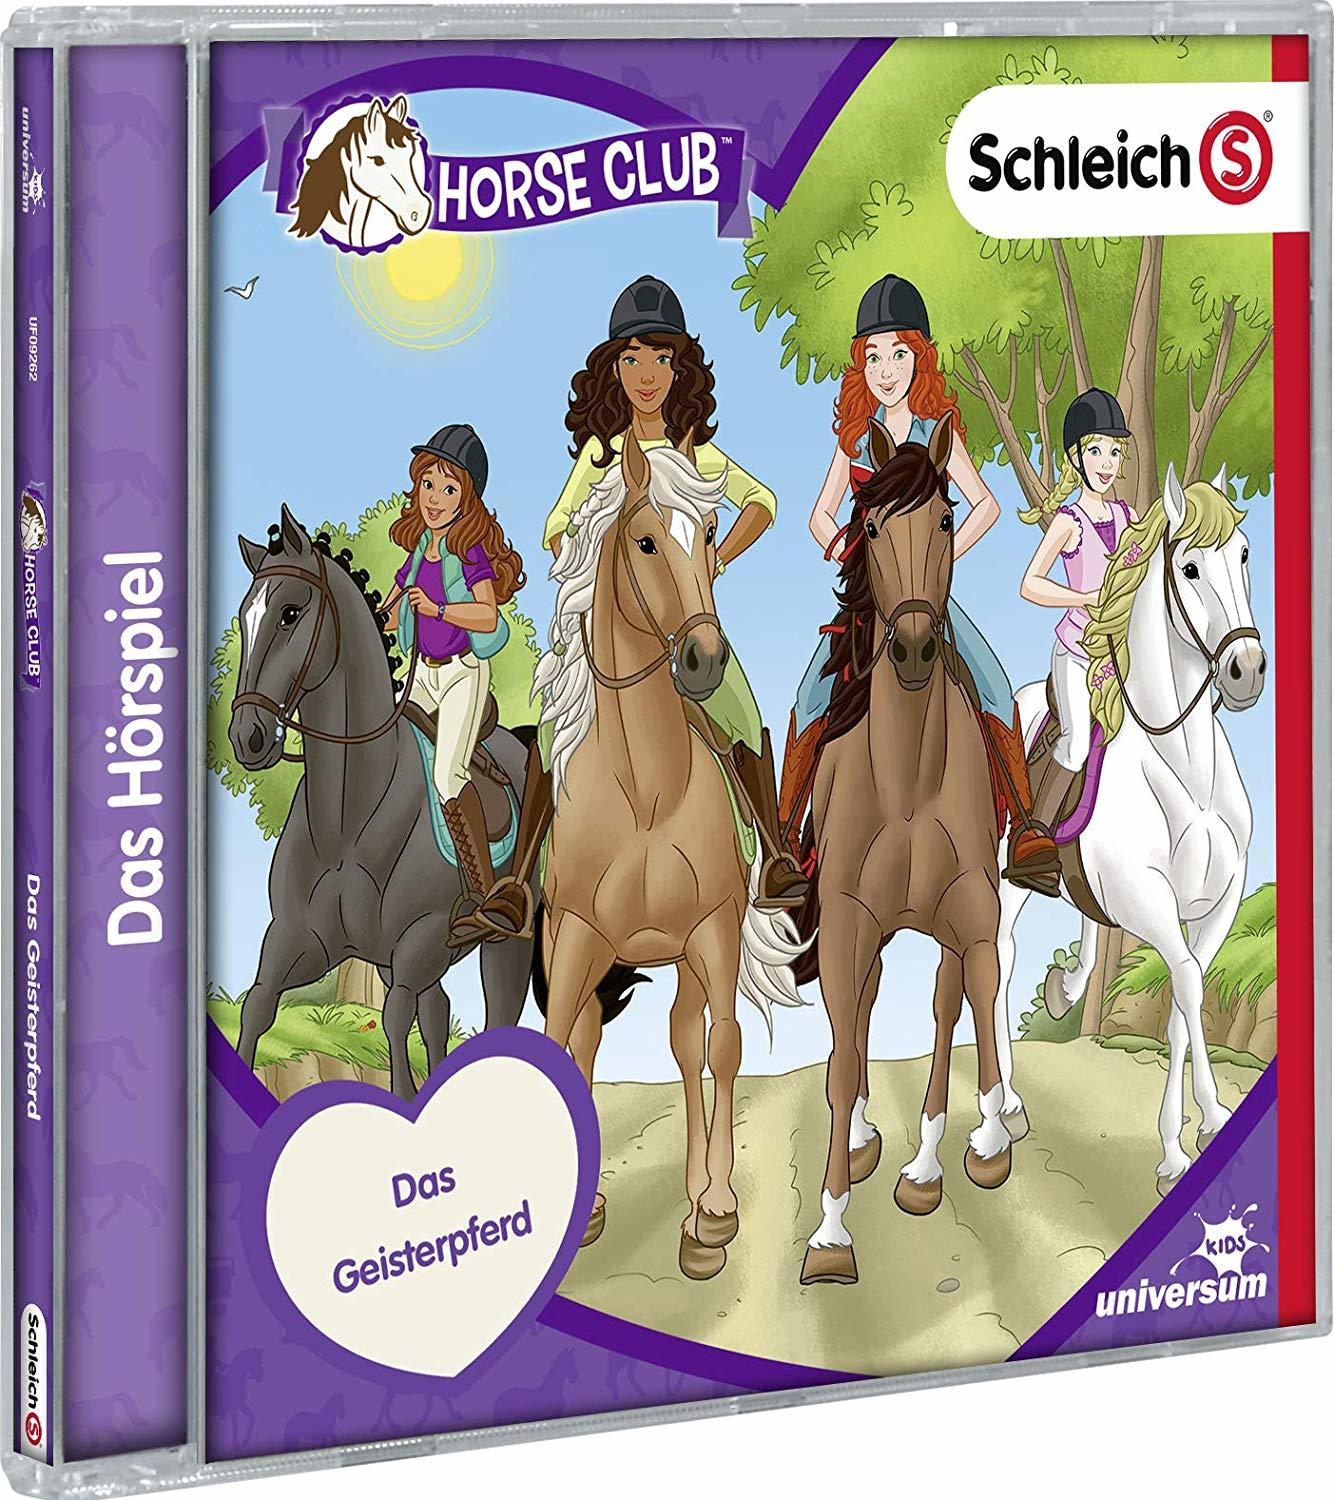 Schleich-Horse VARIOUS Club 5) (CD) - (CD -